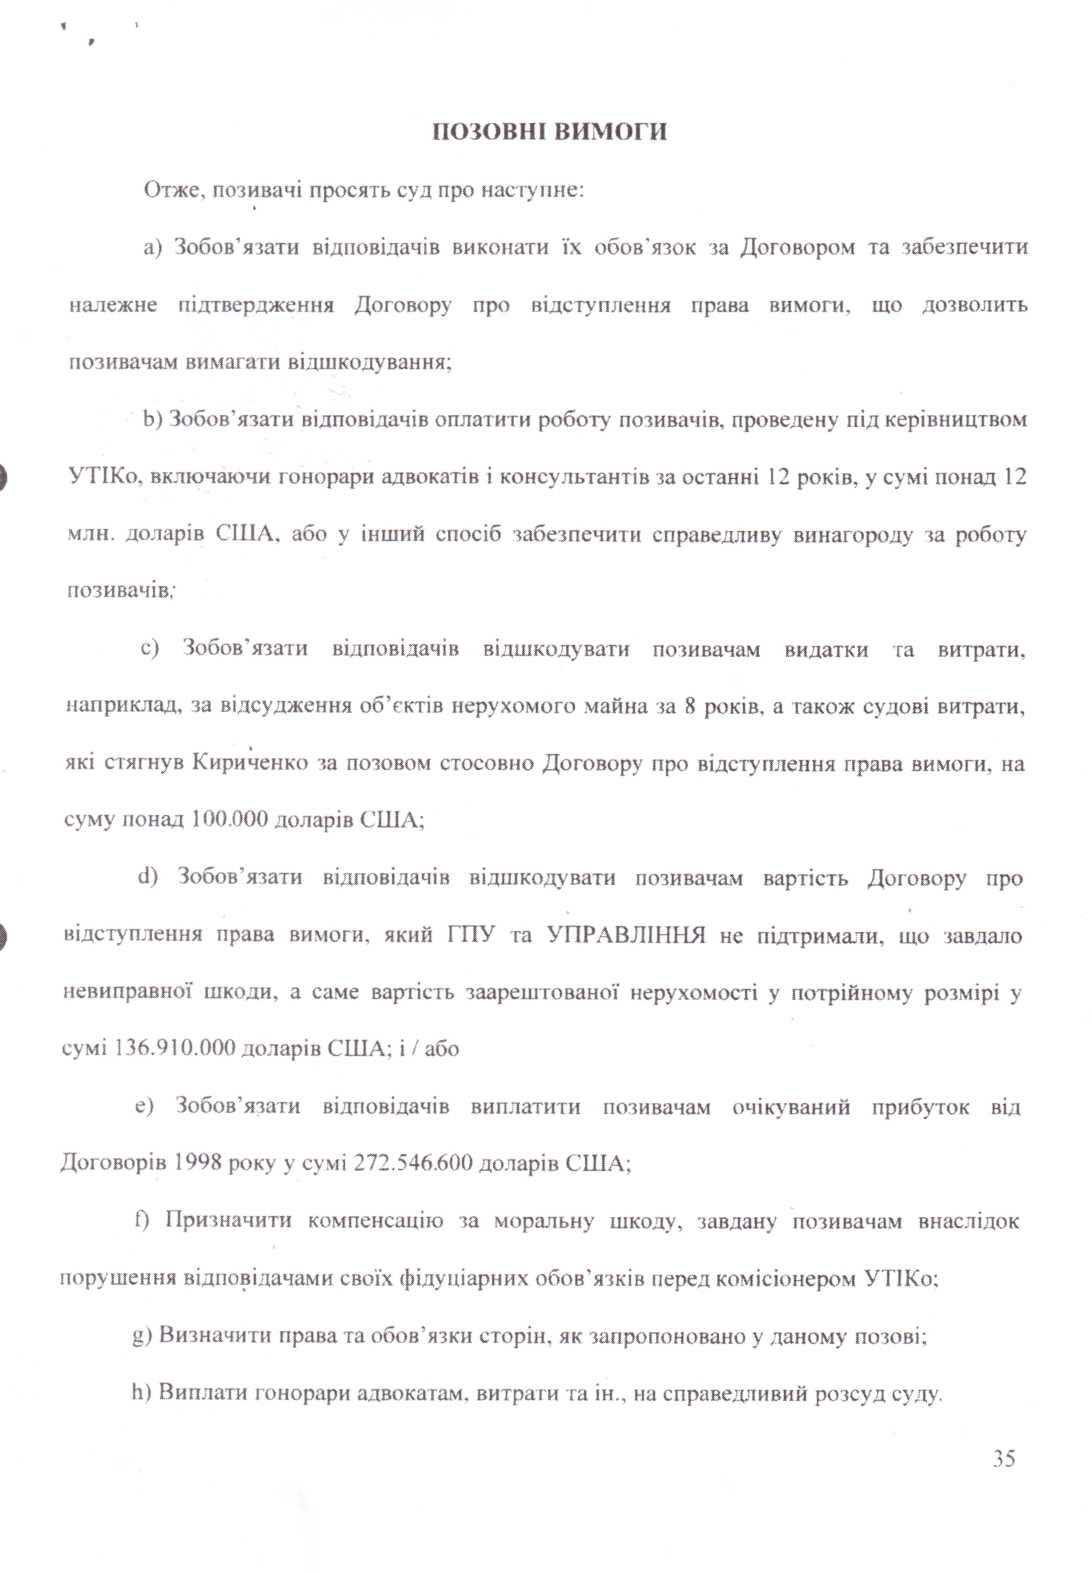 Москаль: ГПУ втянула Украину в миллионные долги. Документ